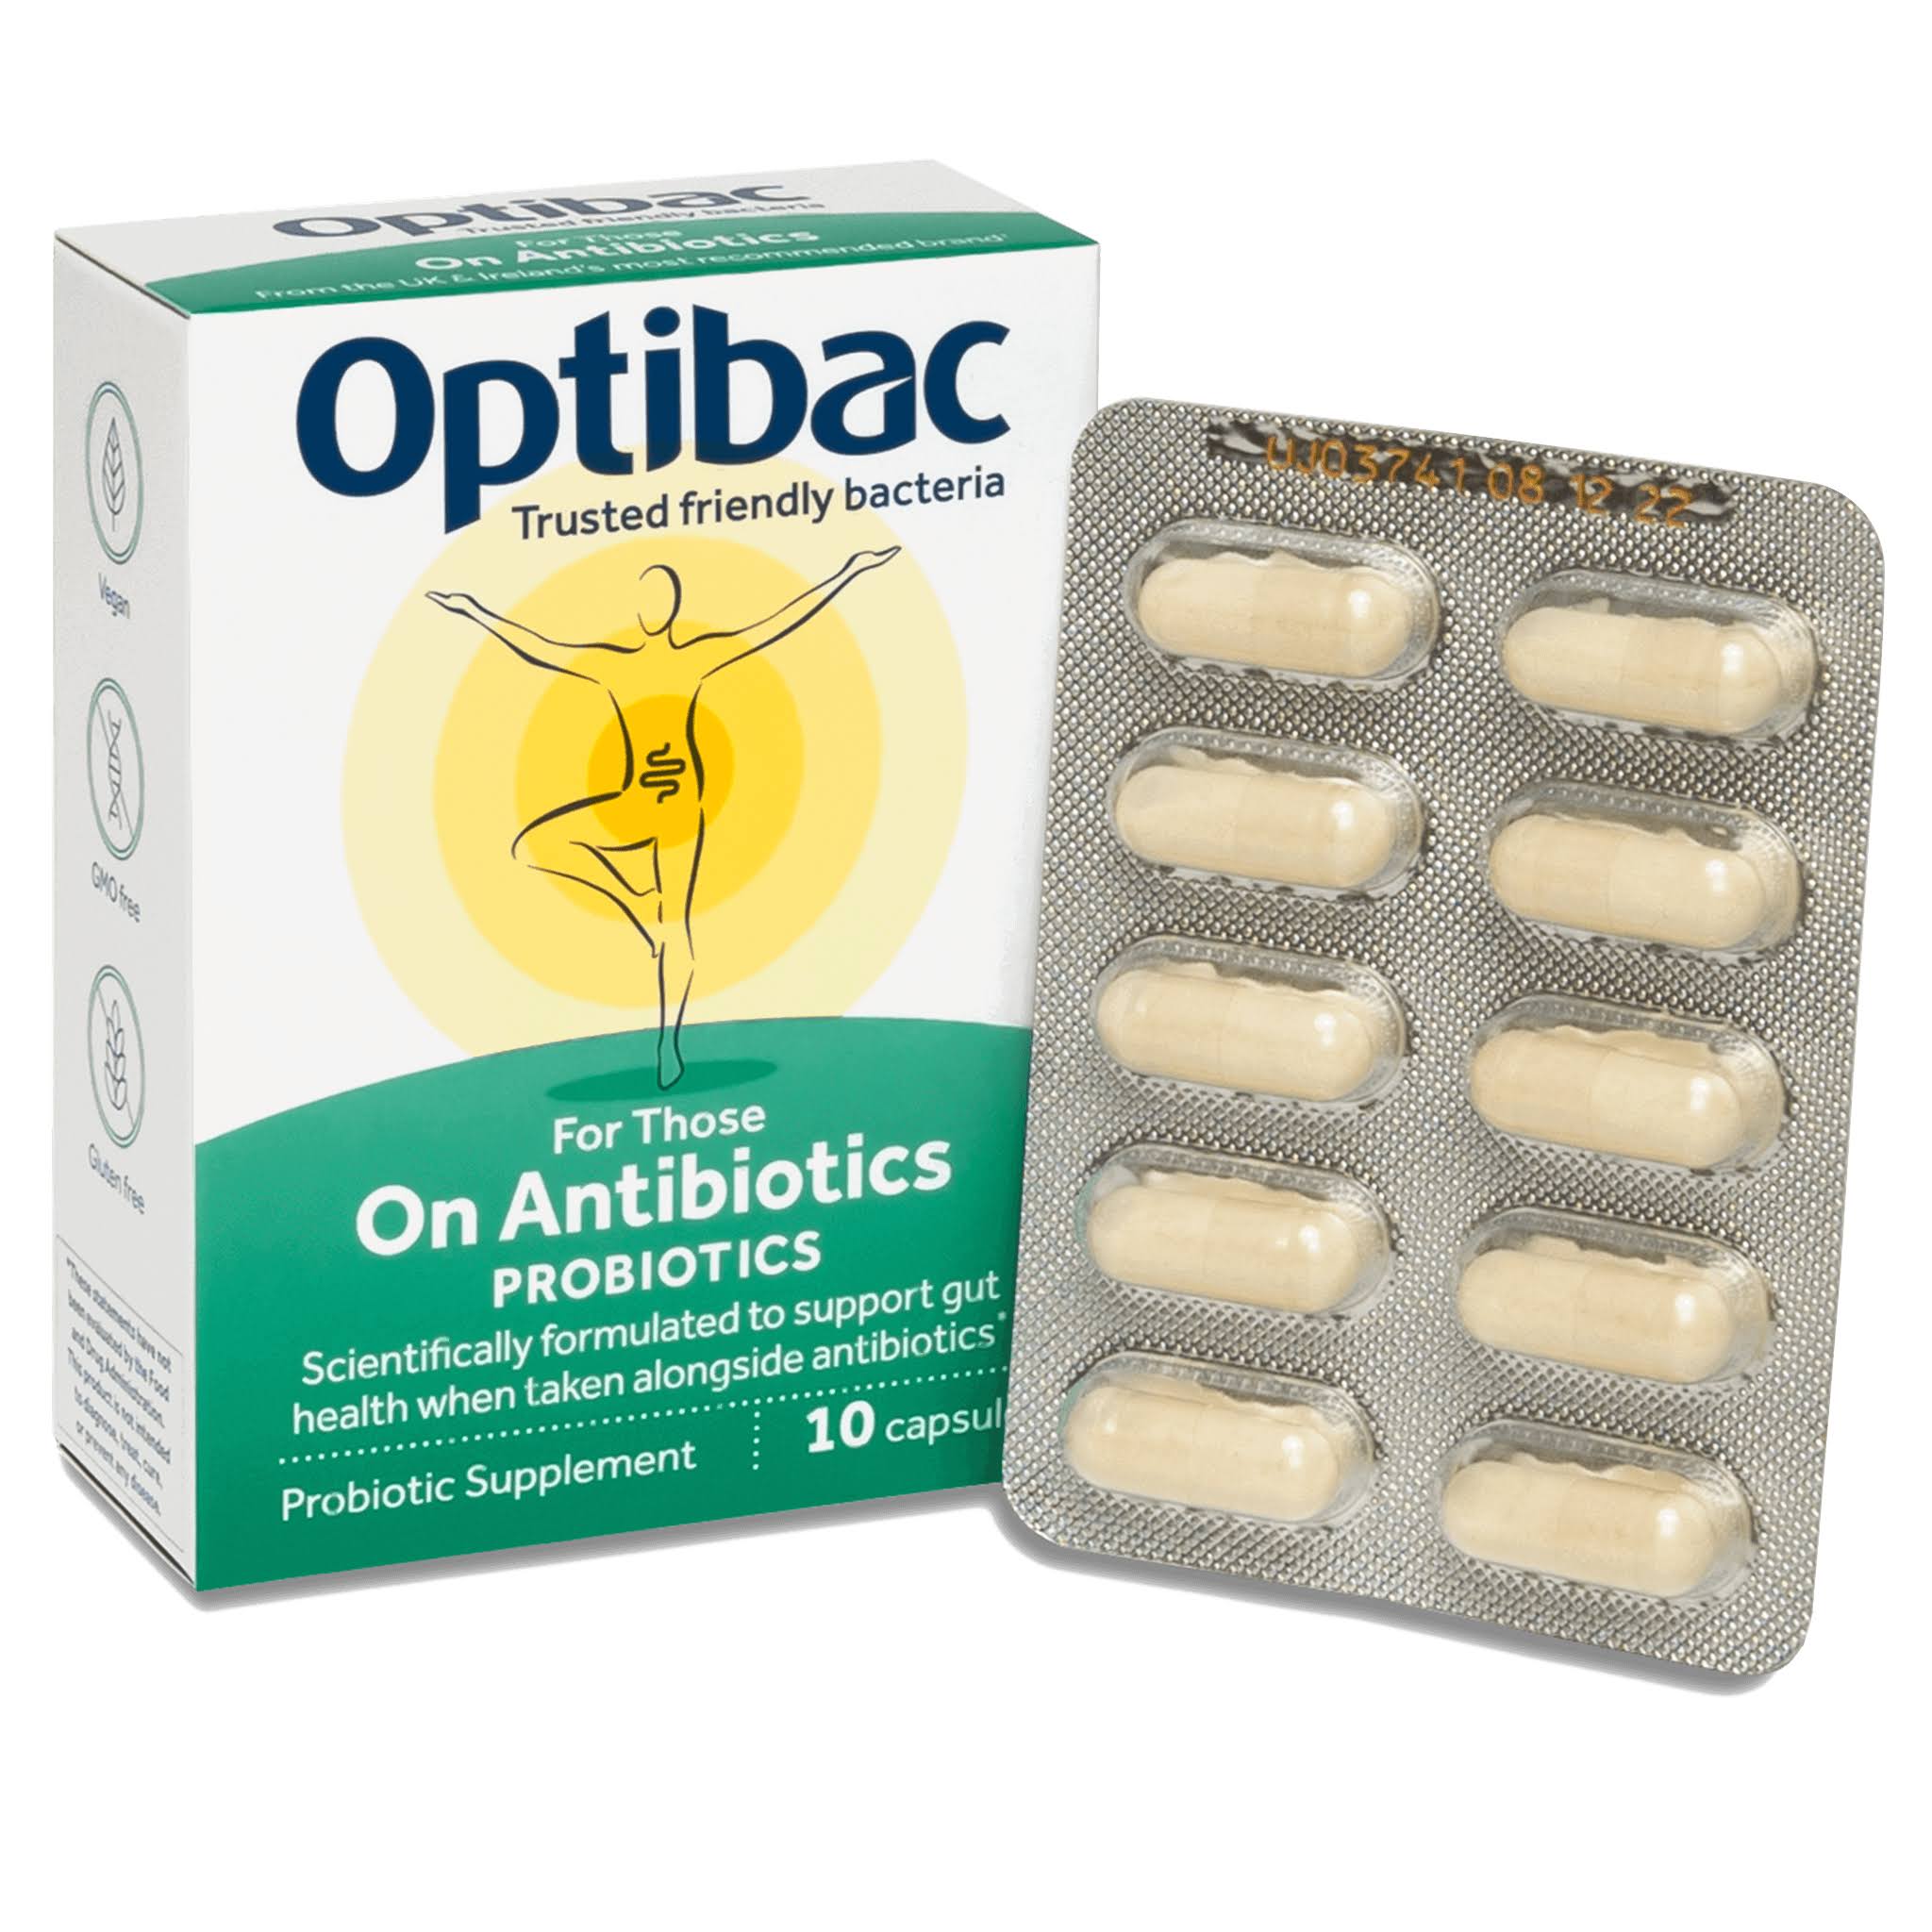 Optibac Probiotics For Those on Antibiotics - 10 Capsules